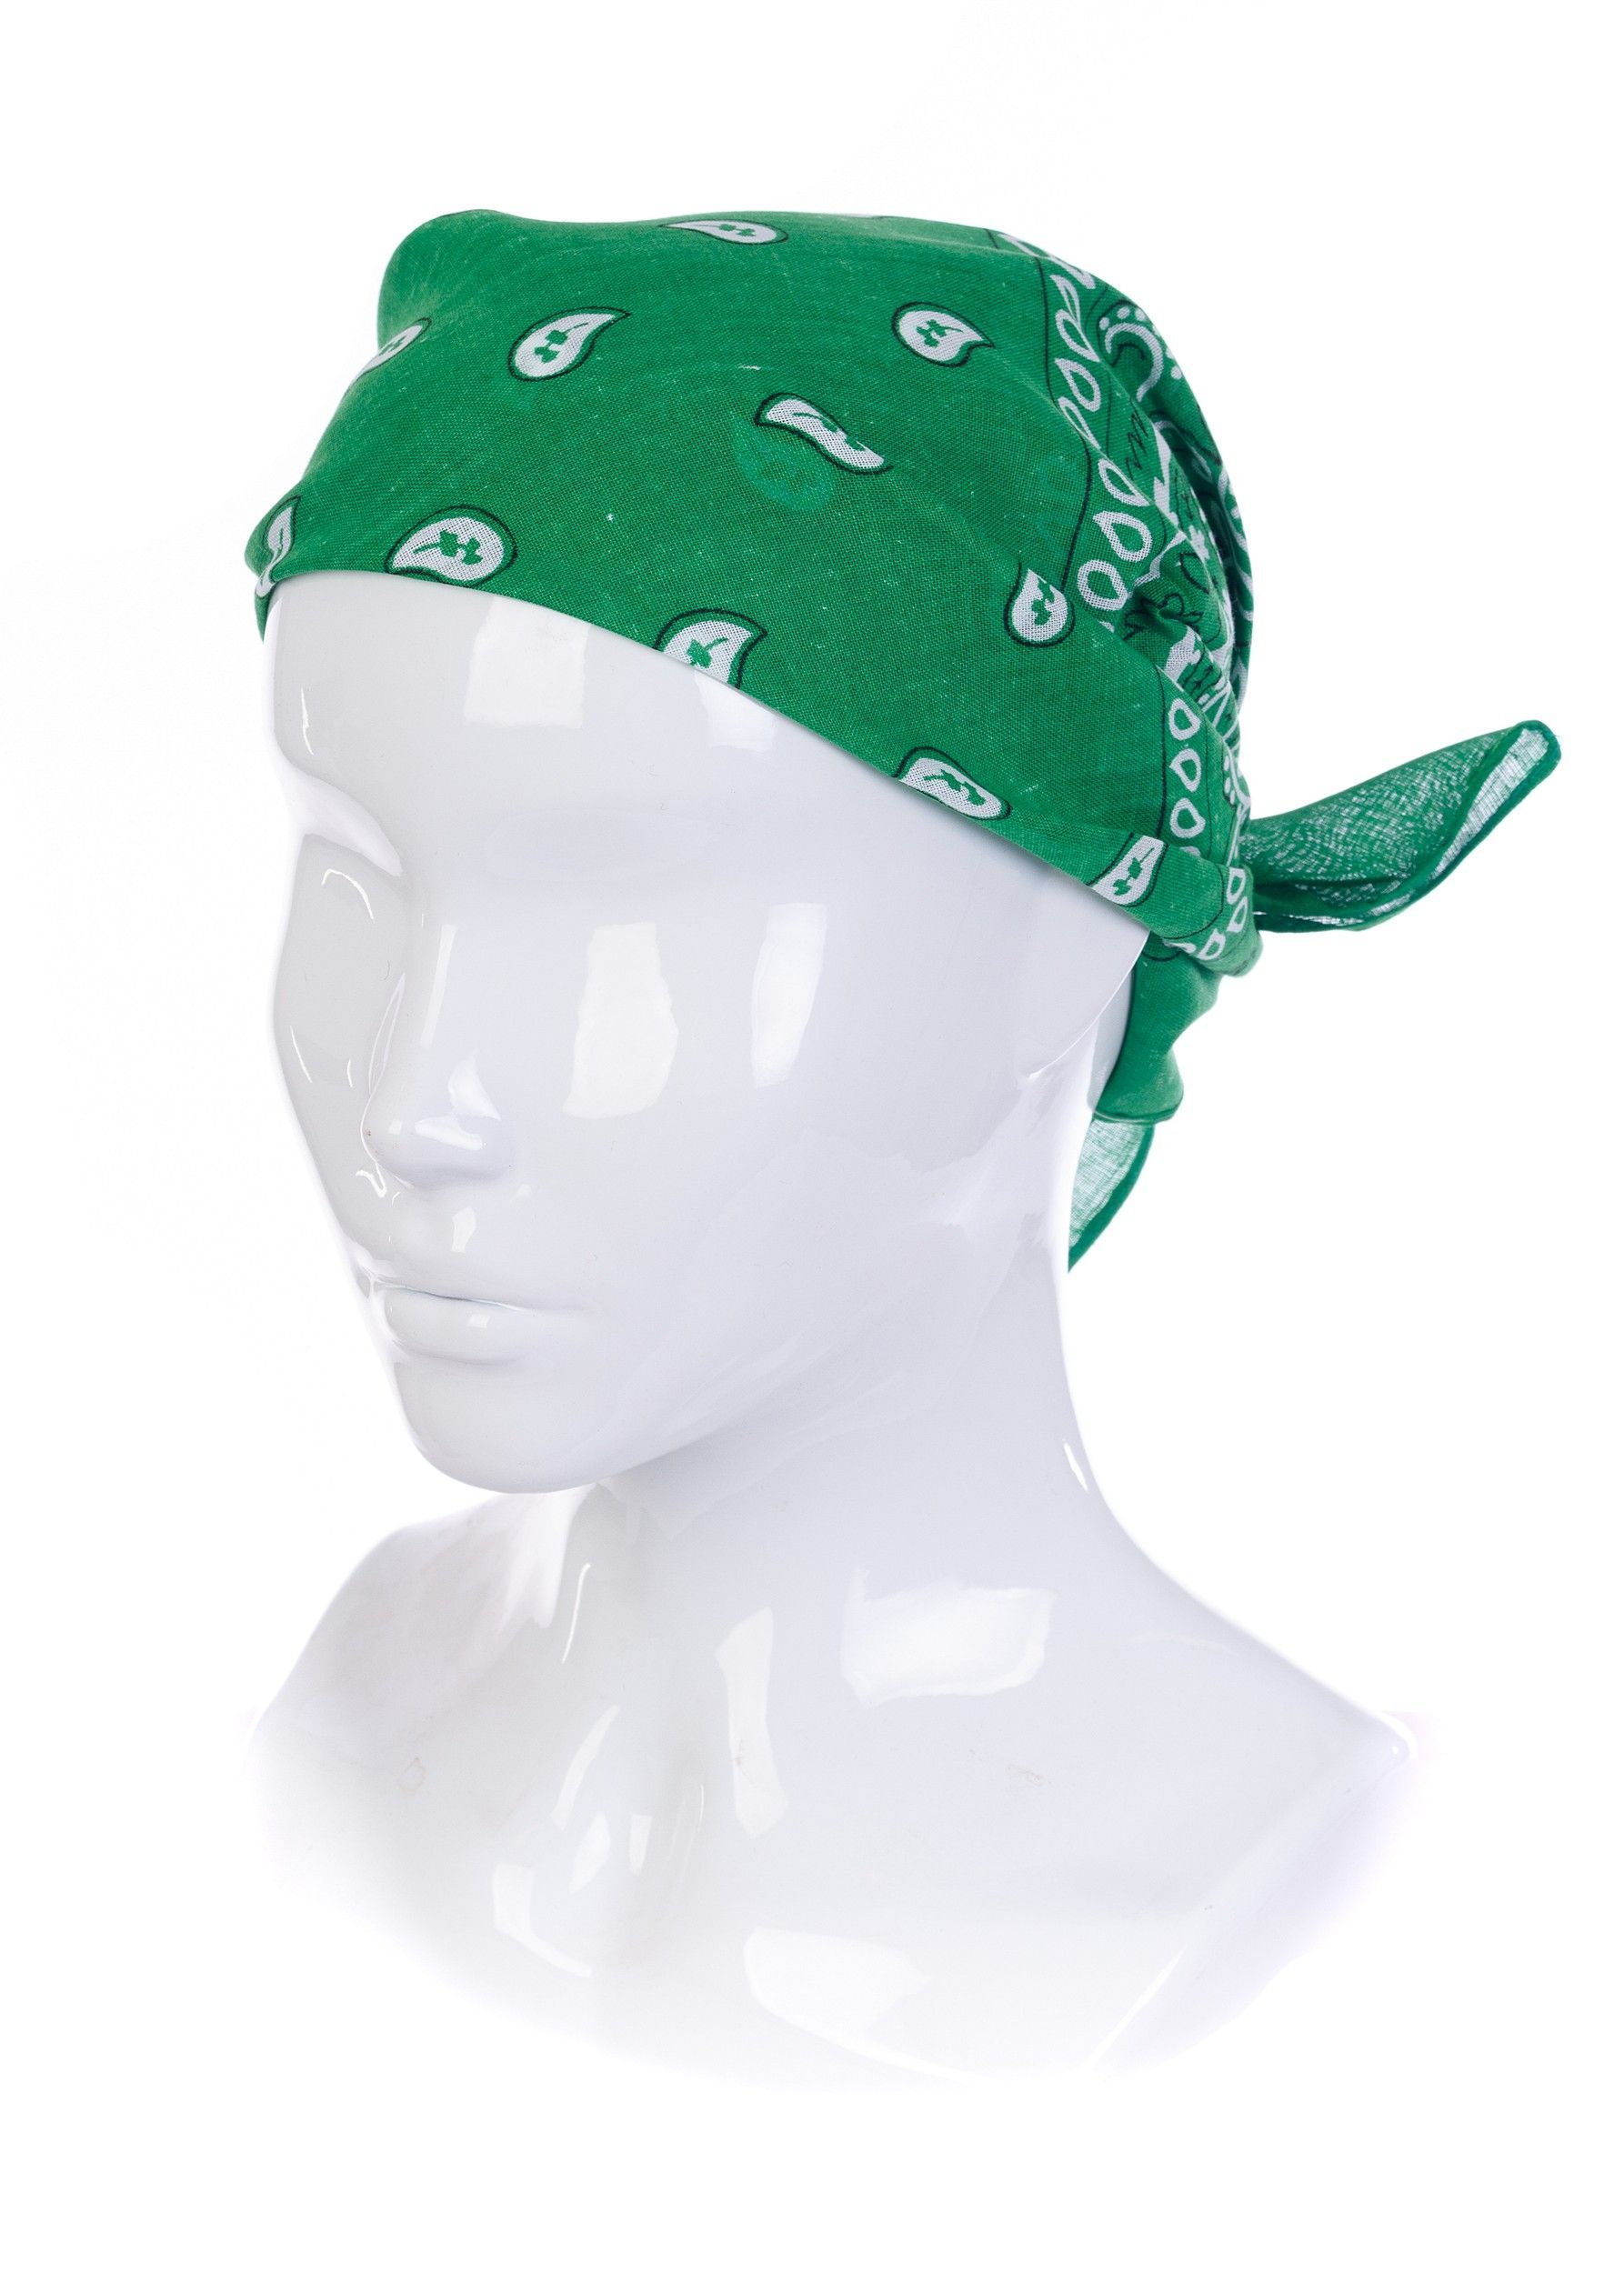 Бандана женская с завитками MAGROM, зеленый, 55 х 55 см, из 100% хлопка